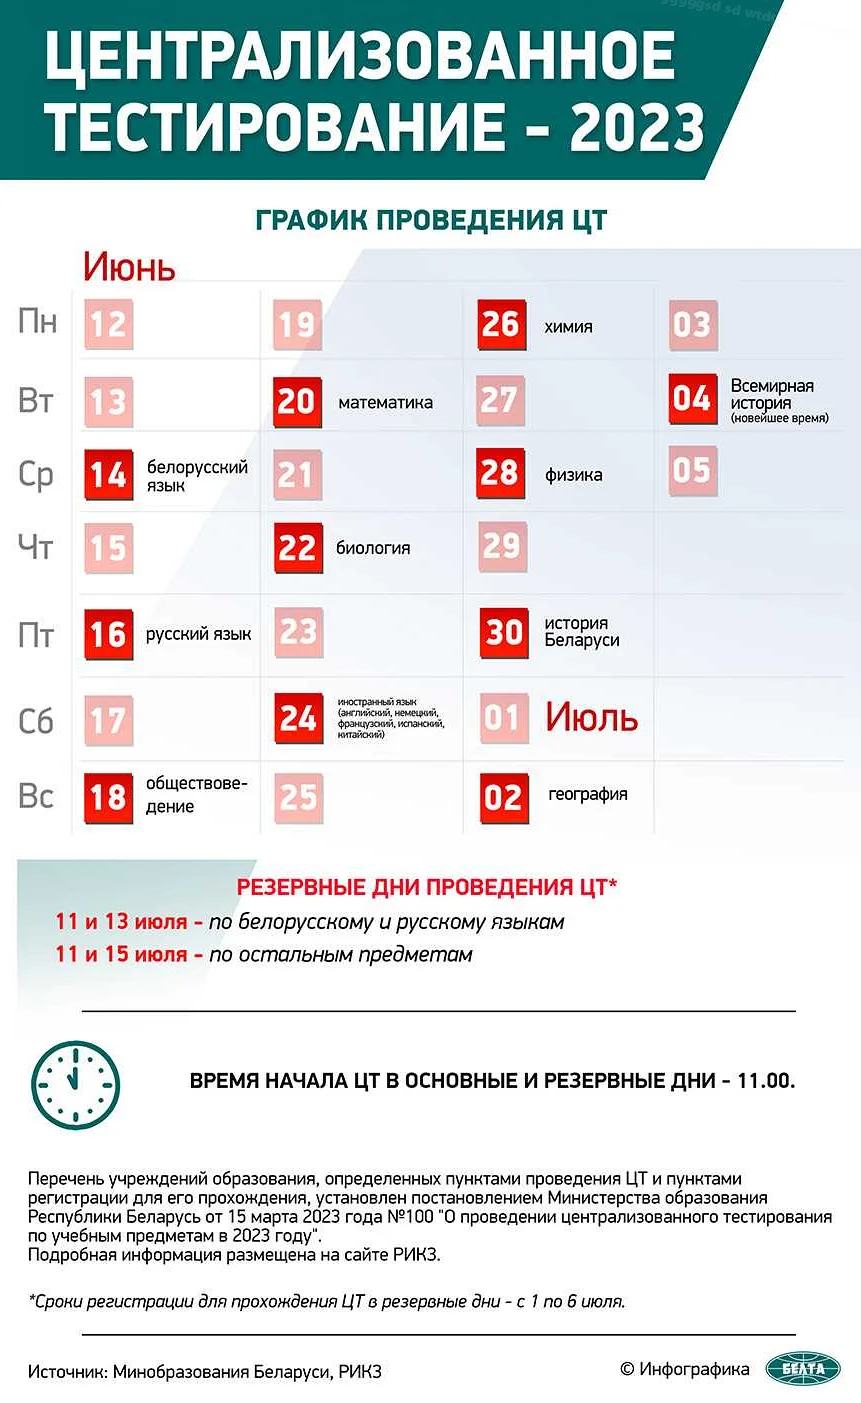 Как эффективно распределить время подготовки к ЦТ по математике в Беларуси?